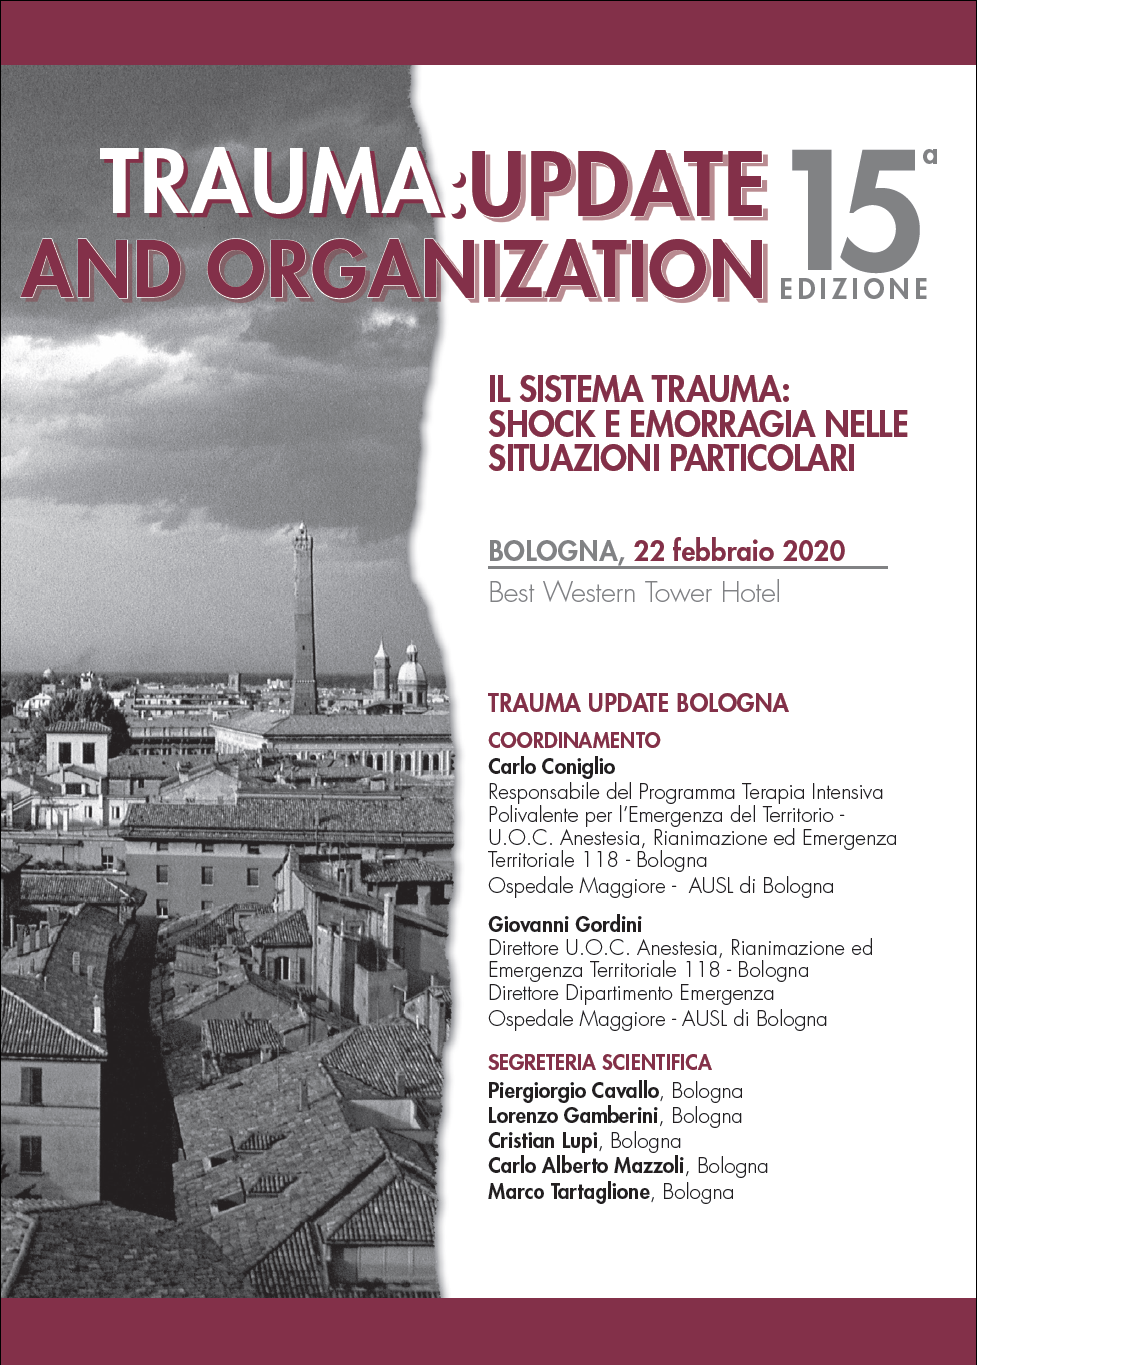 Trauma: Update and Organization - 15^ edizione